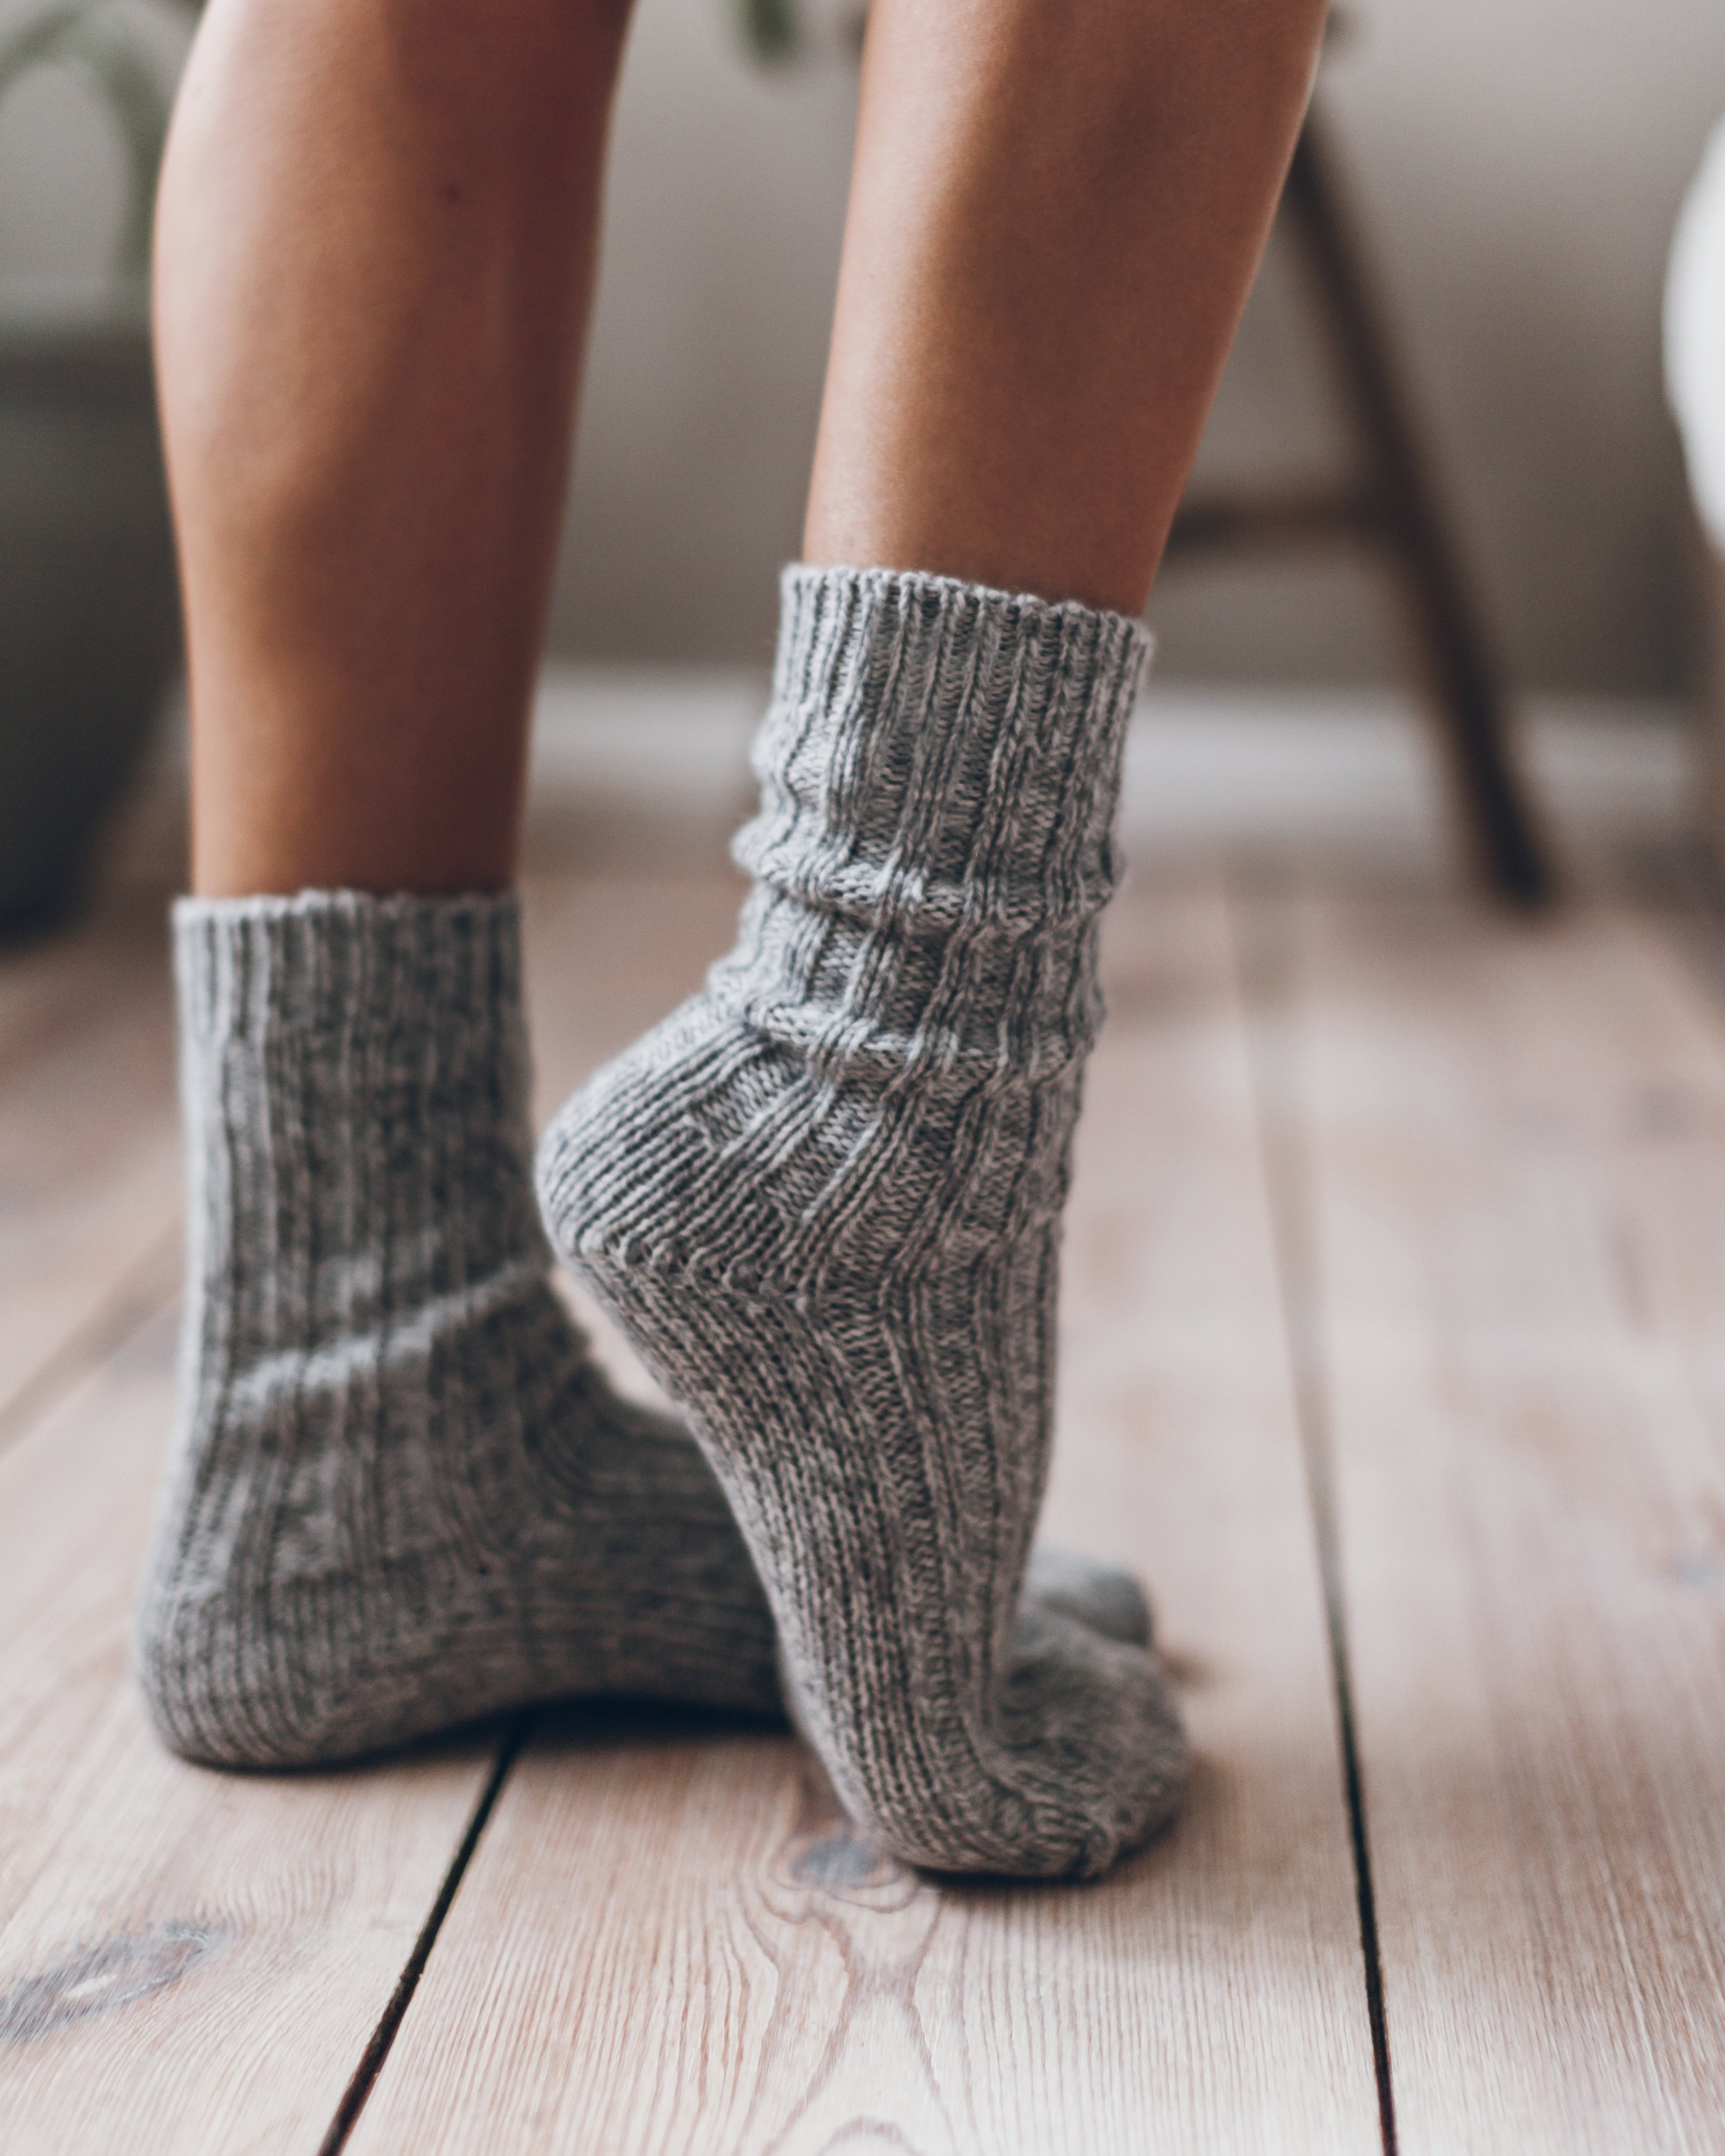 The Light Knitted Socks